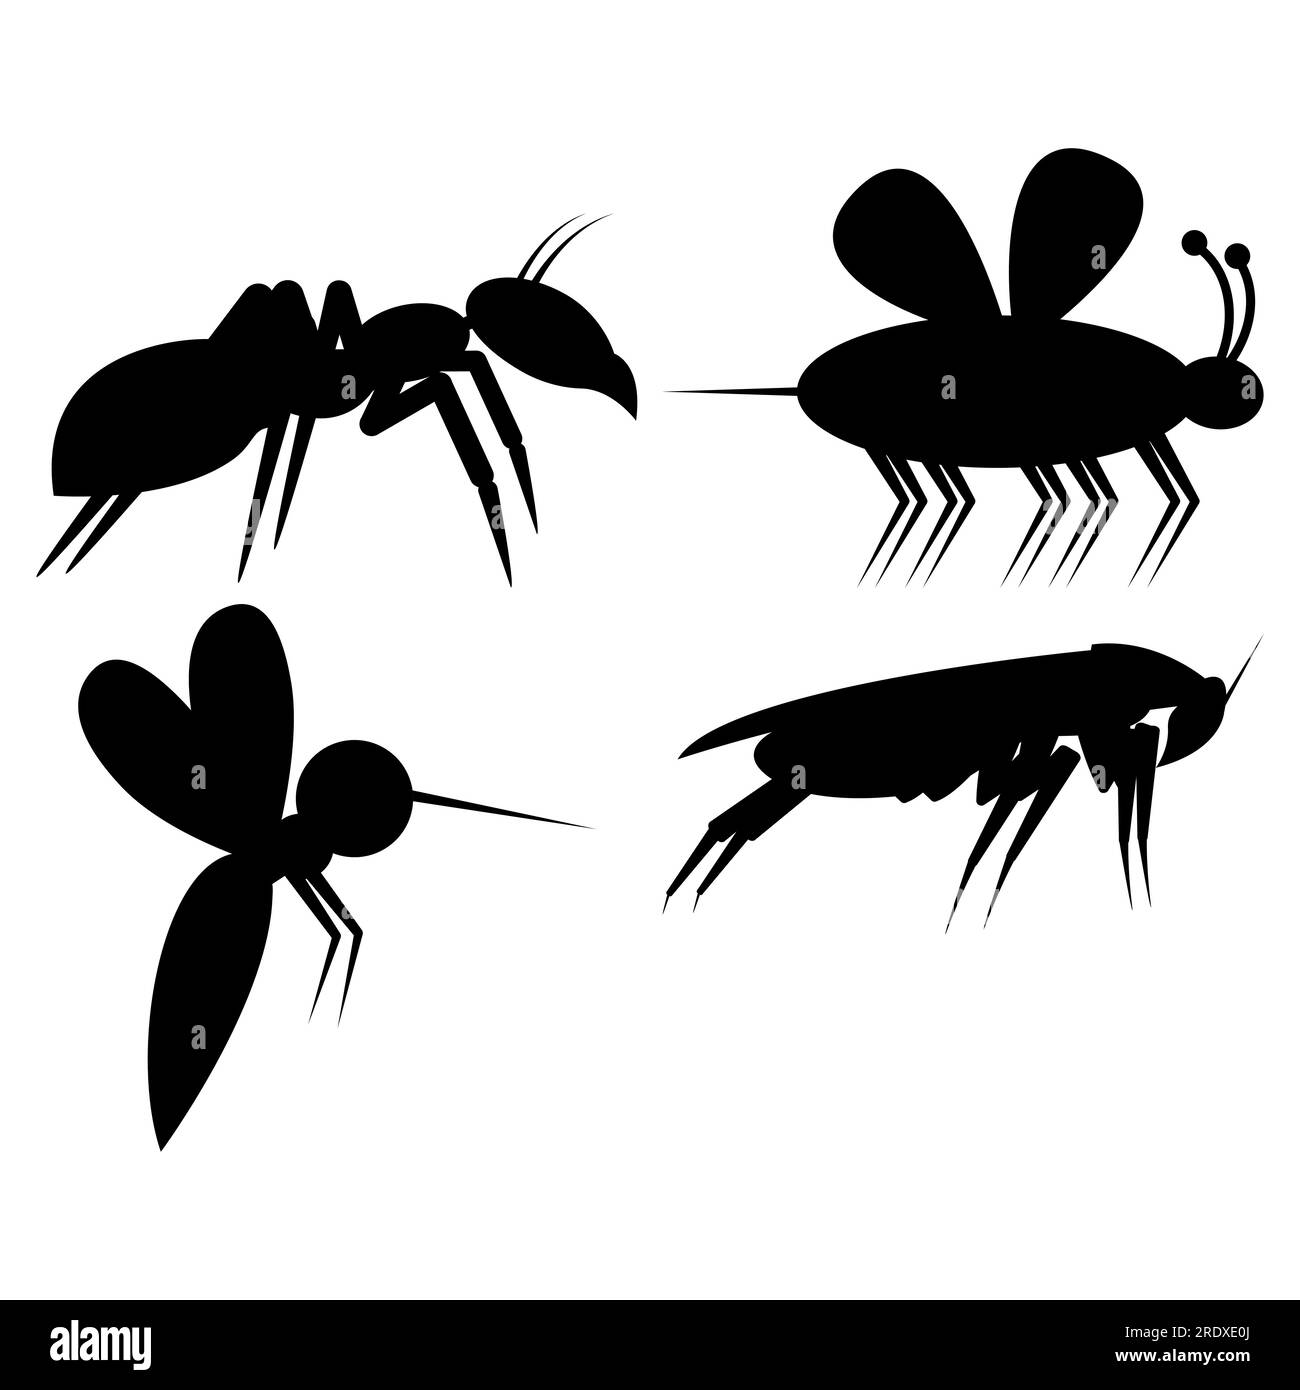 Ein Satz Silhouetten-Insektenschädlinge. Vektorbilder von Mücken, Bienen, Kakerlaken, Ameisen. Stock Vektor